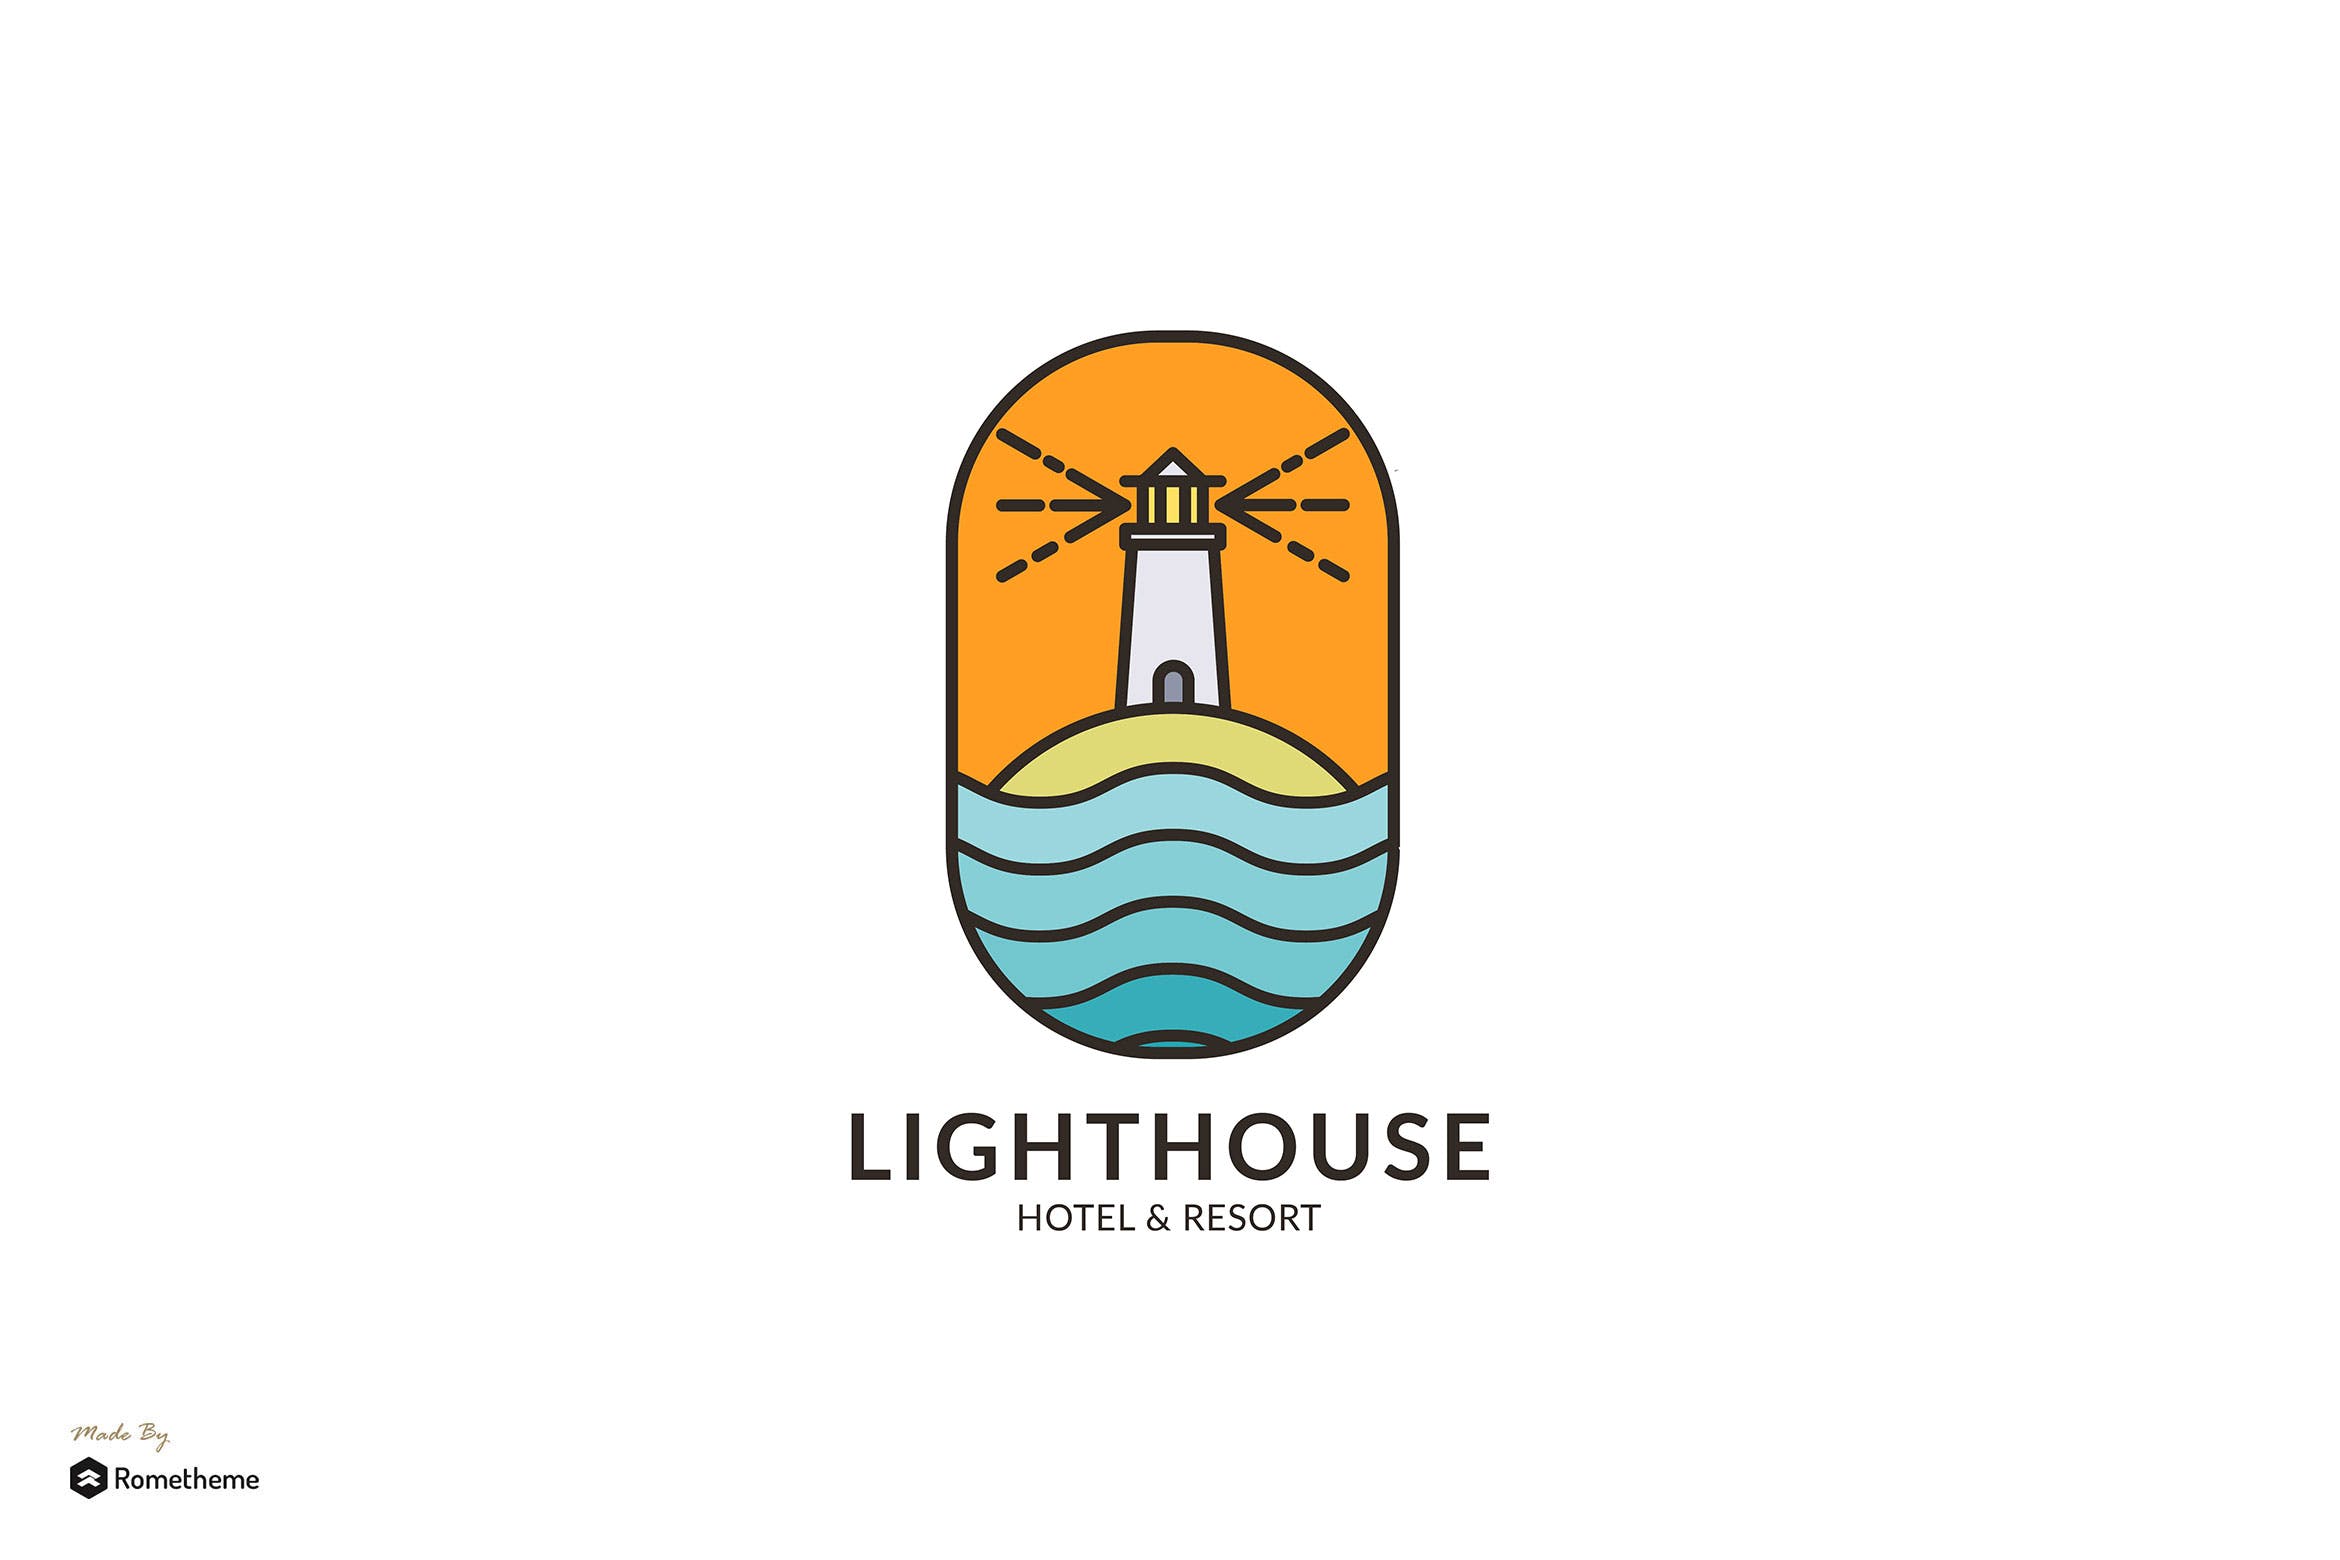 灯塔酒店/度假村商标&品牌Logo设计非凡图库精选模板 Lighthouse Hotel & Resort – Logo Template RB插图